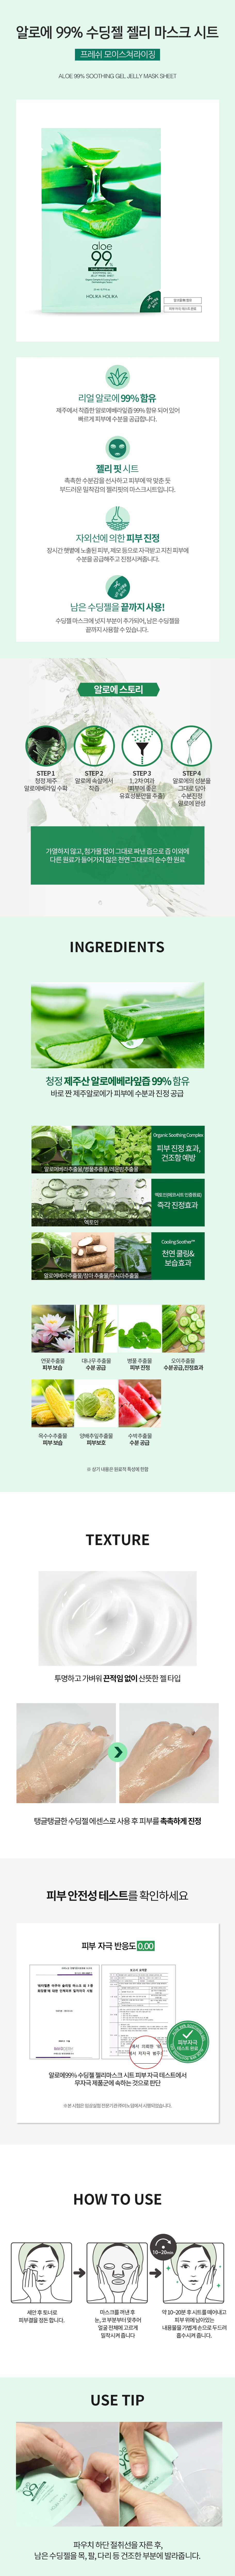 Holika Holika Aloe 99% Soothing Gel Jelly Mask Sheet korean cosmetic skincare product online shop malaysia1